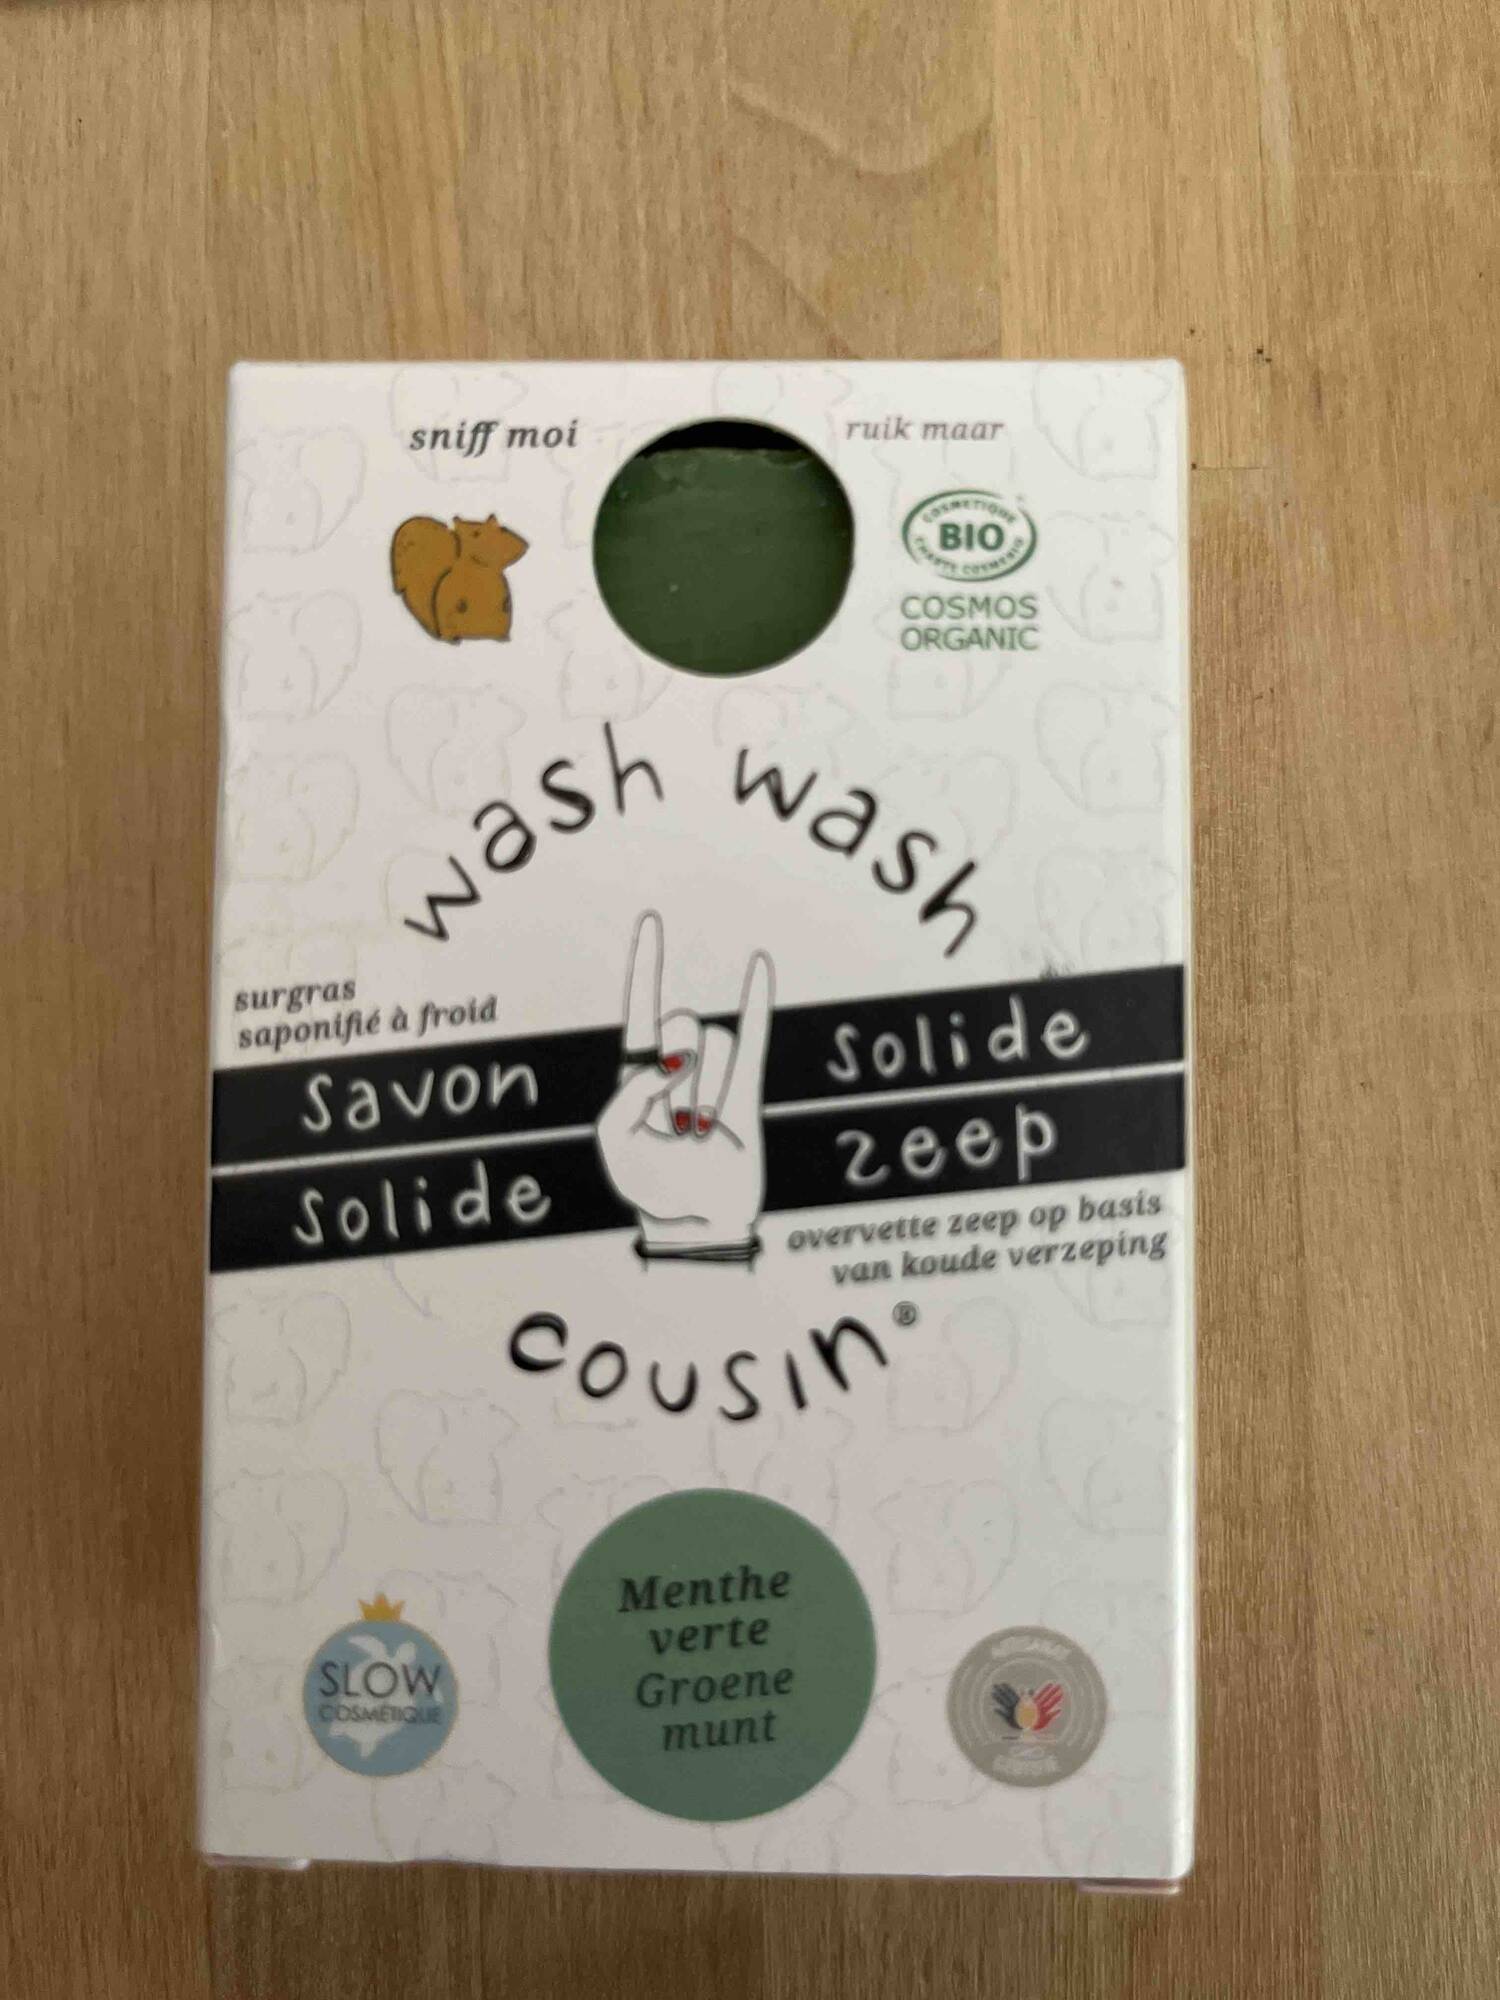 WASH WASH COUSIN - Savon solide menthe verte